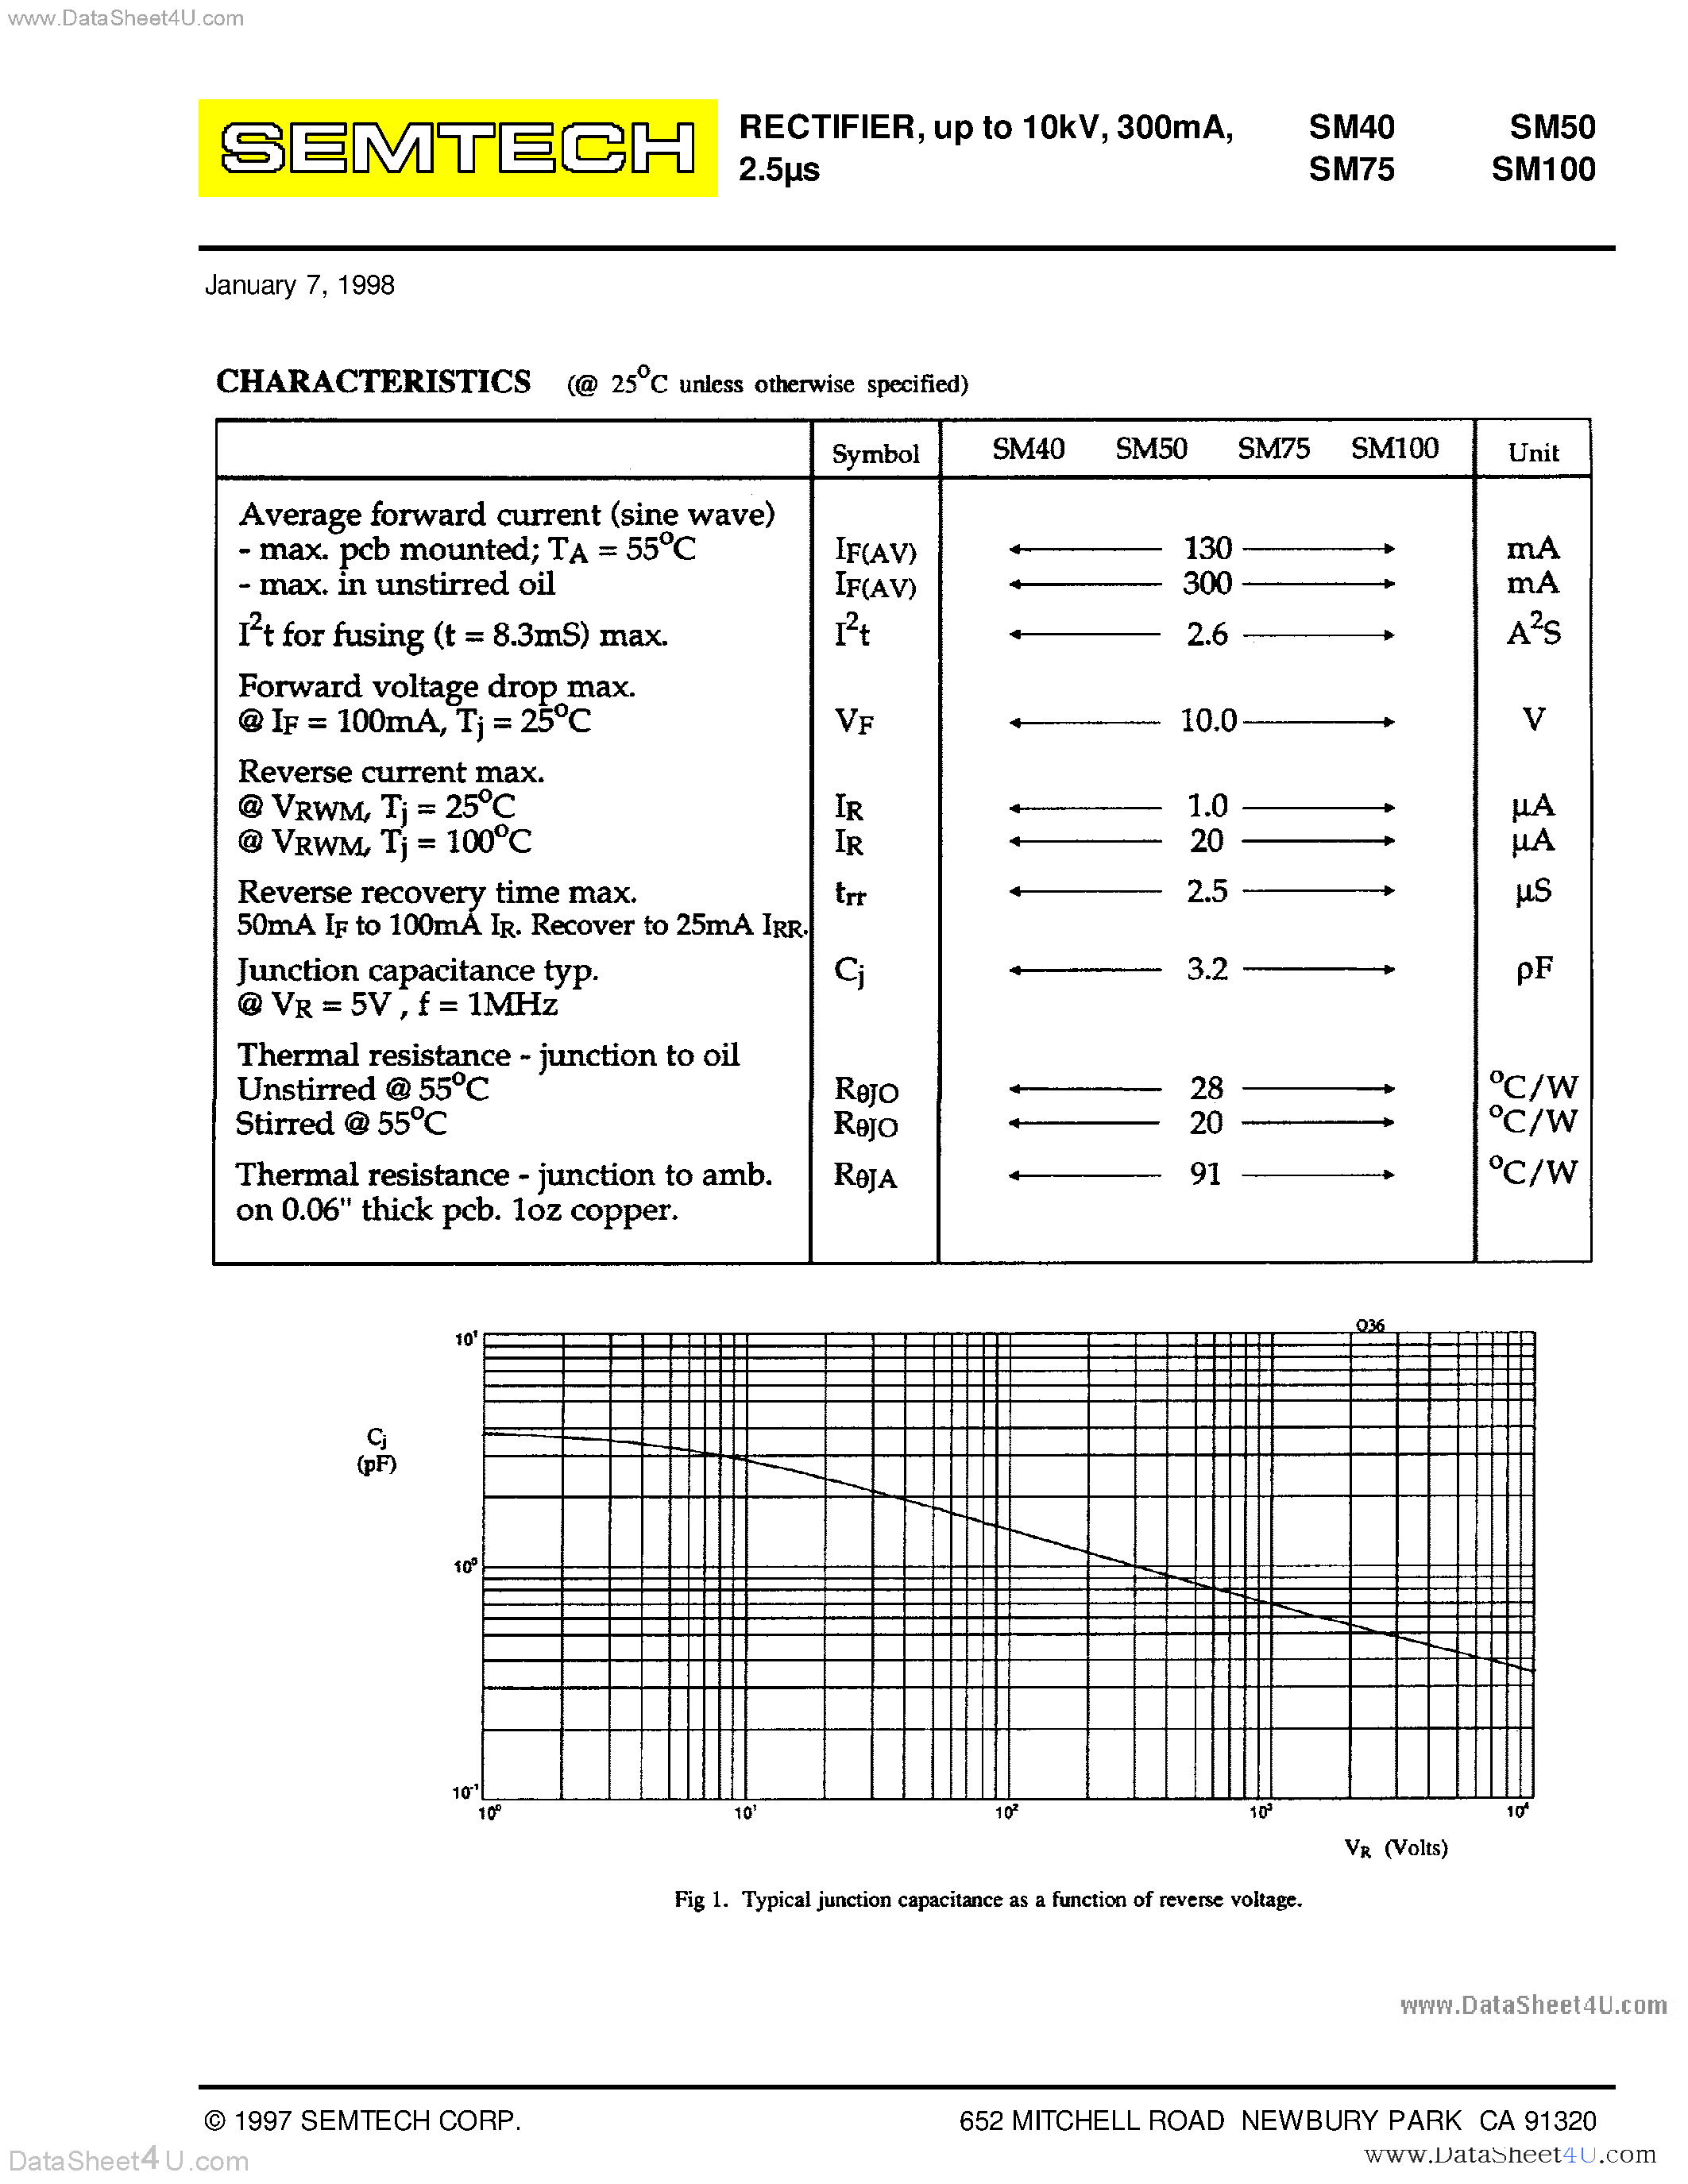 Datasheet SM100 - Rectifier Diode page 2